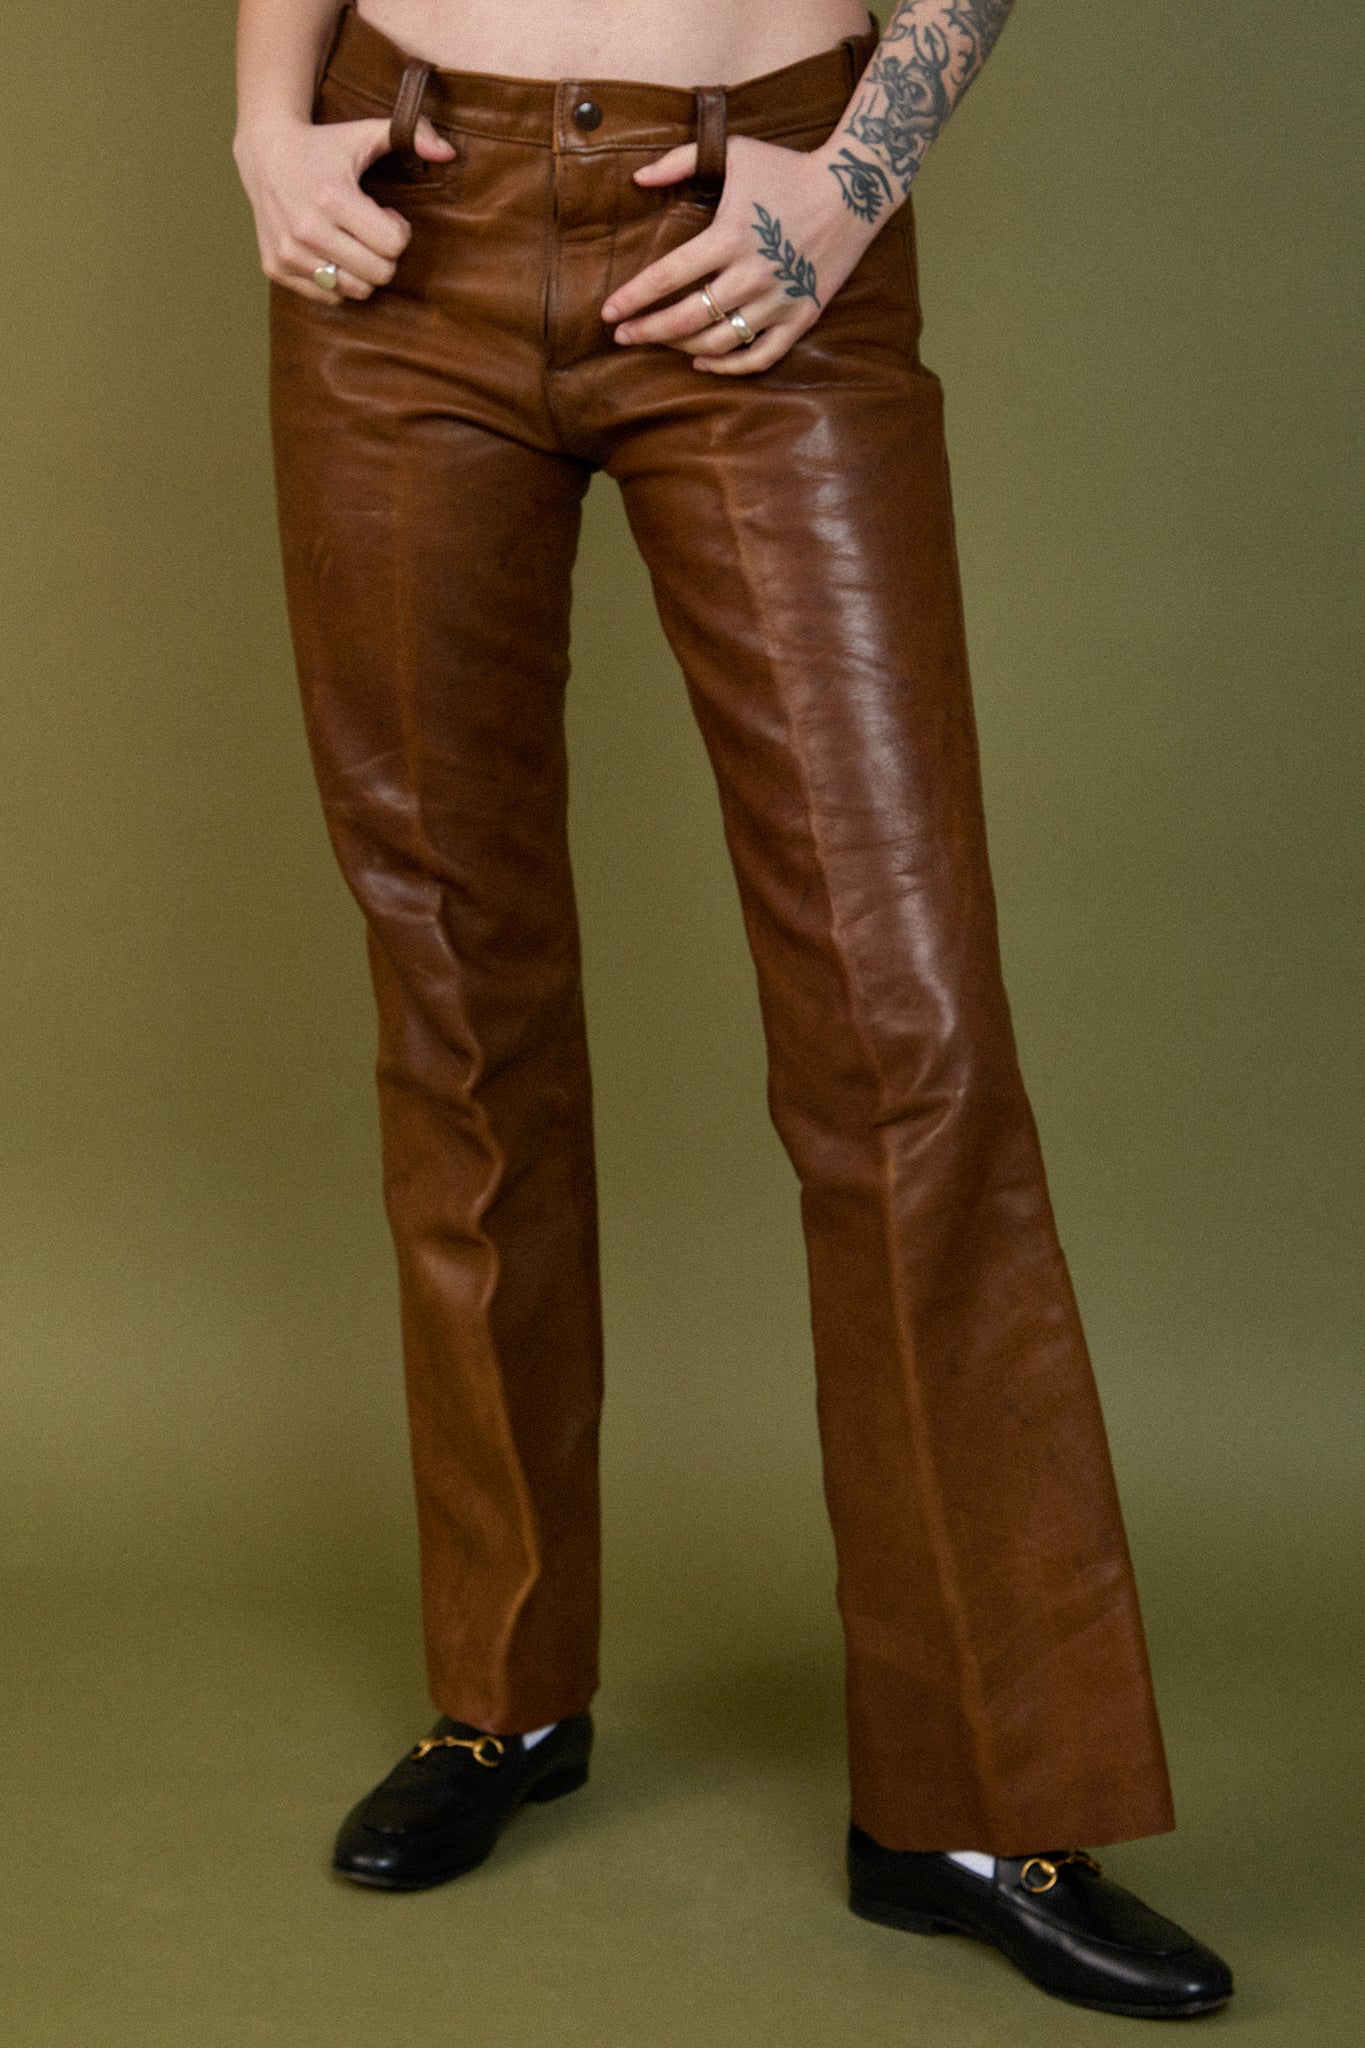 Billie Leather Pants